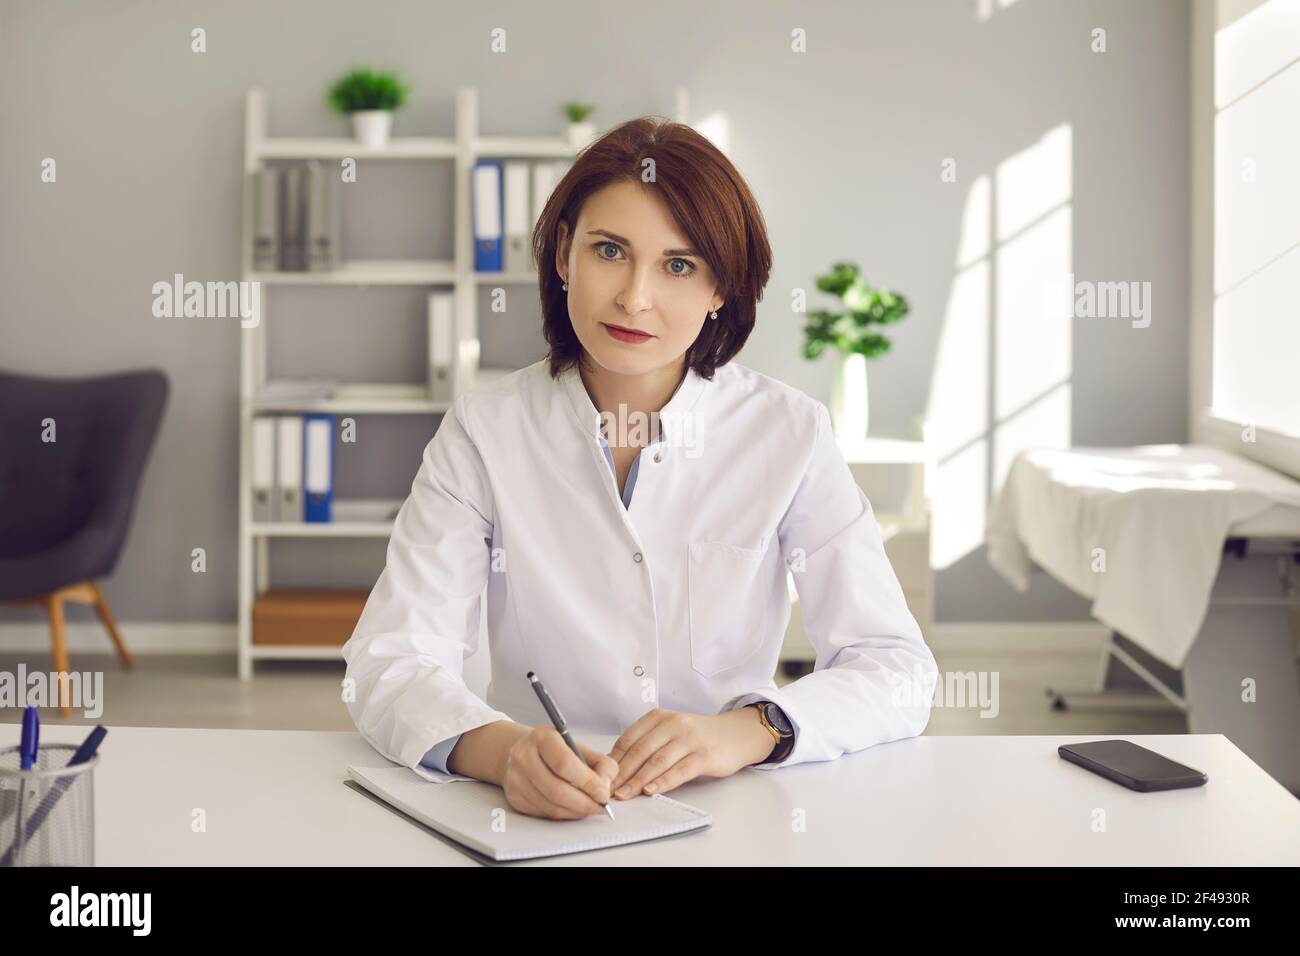 Une femme médecin écrit des notes lors d'une vidéoconférence ou à l'écoute de la formation médicale en ligne. Banque D'Images